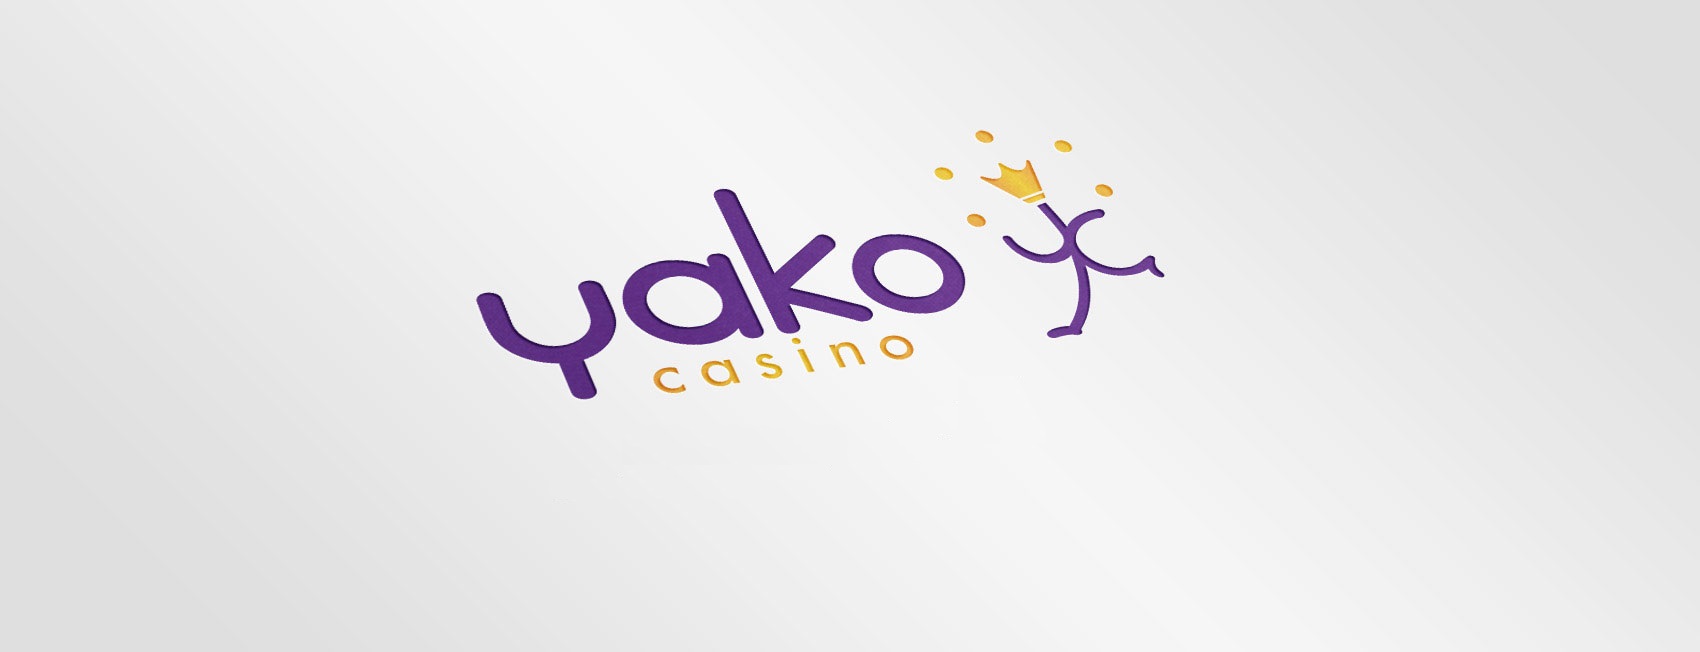 Yako Casino games collection